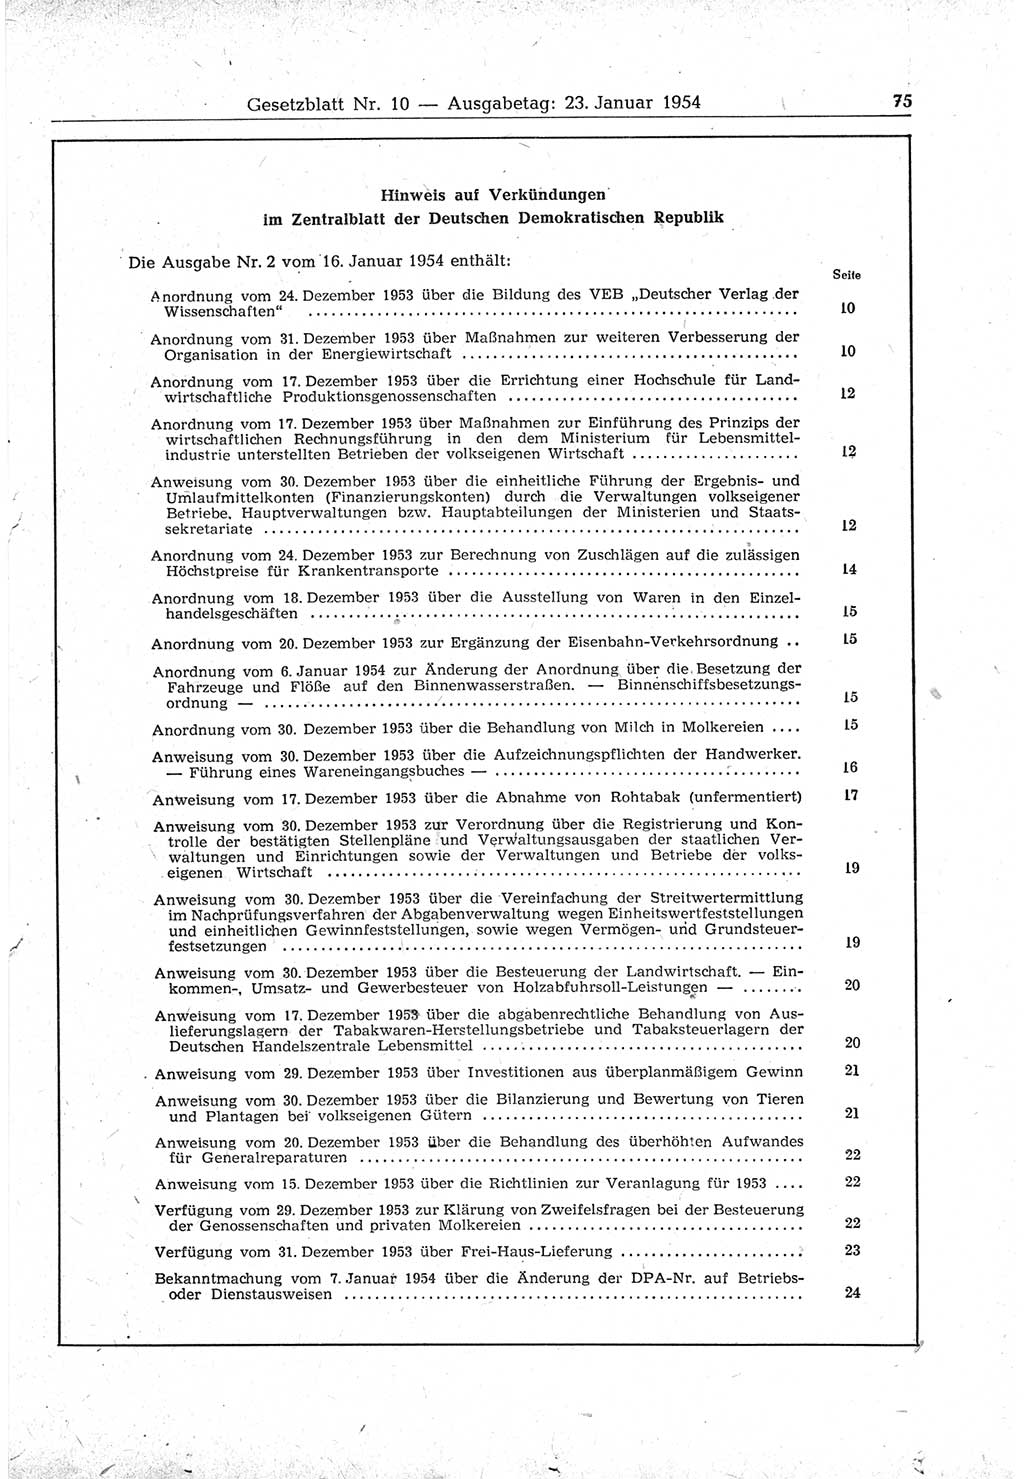 Gesetzblatt (GBl.) der Deutschen Demokratischen Republik (DDR) 1954, Seite 75 (GBl. DDR 1954, S. 75)